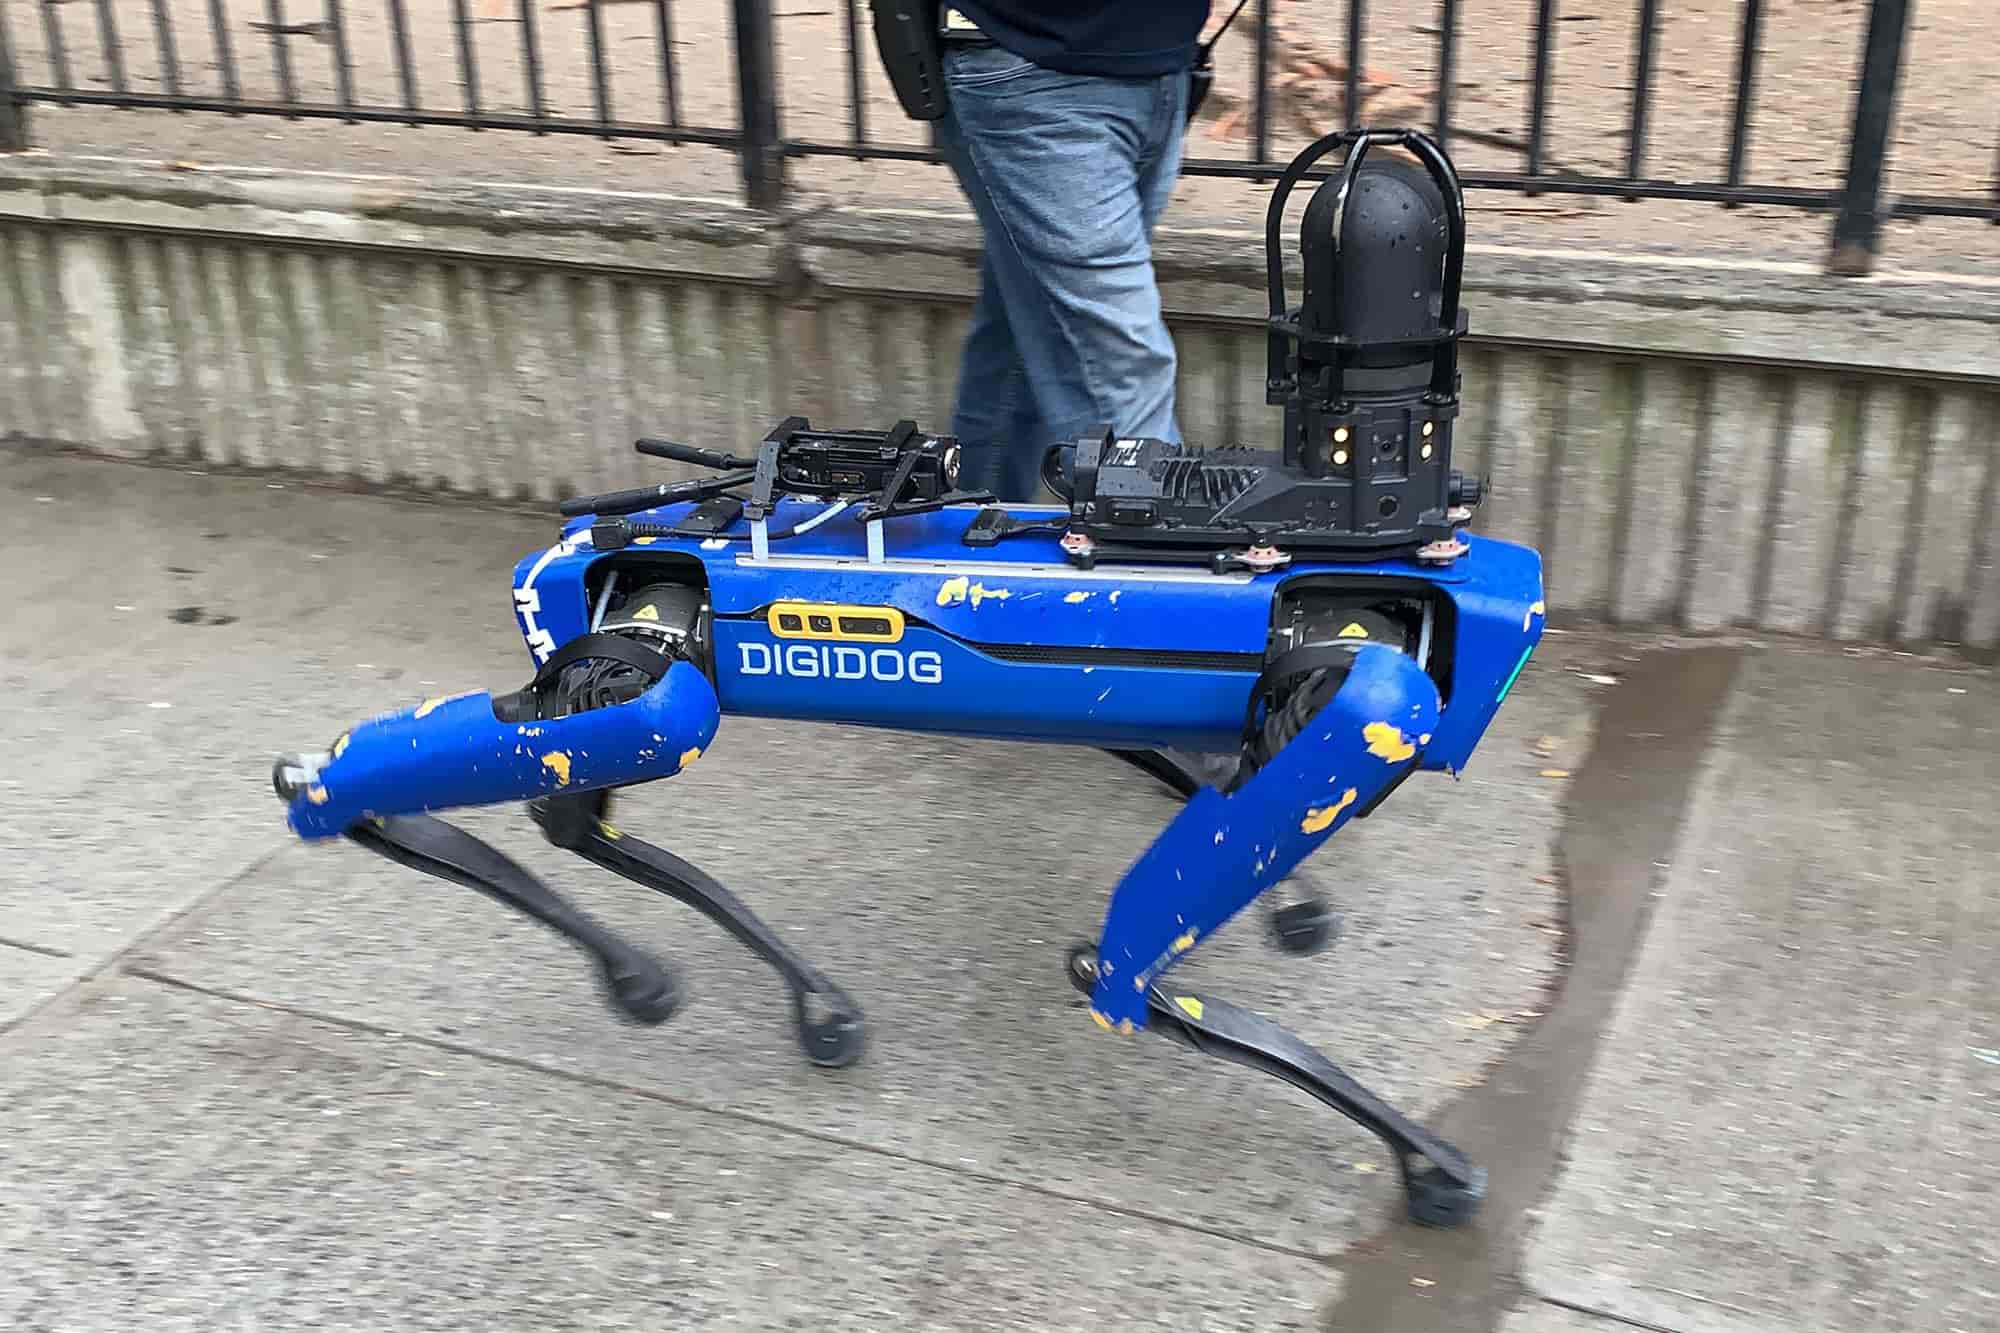 regresa el Robodog de Boston Dynamics